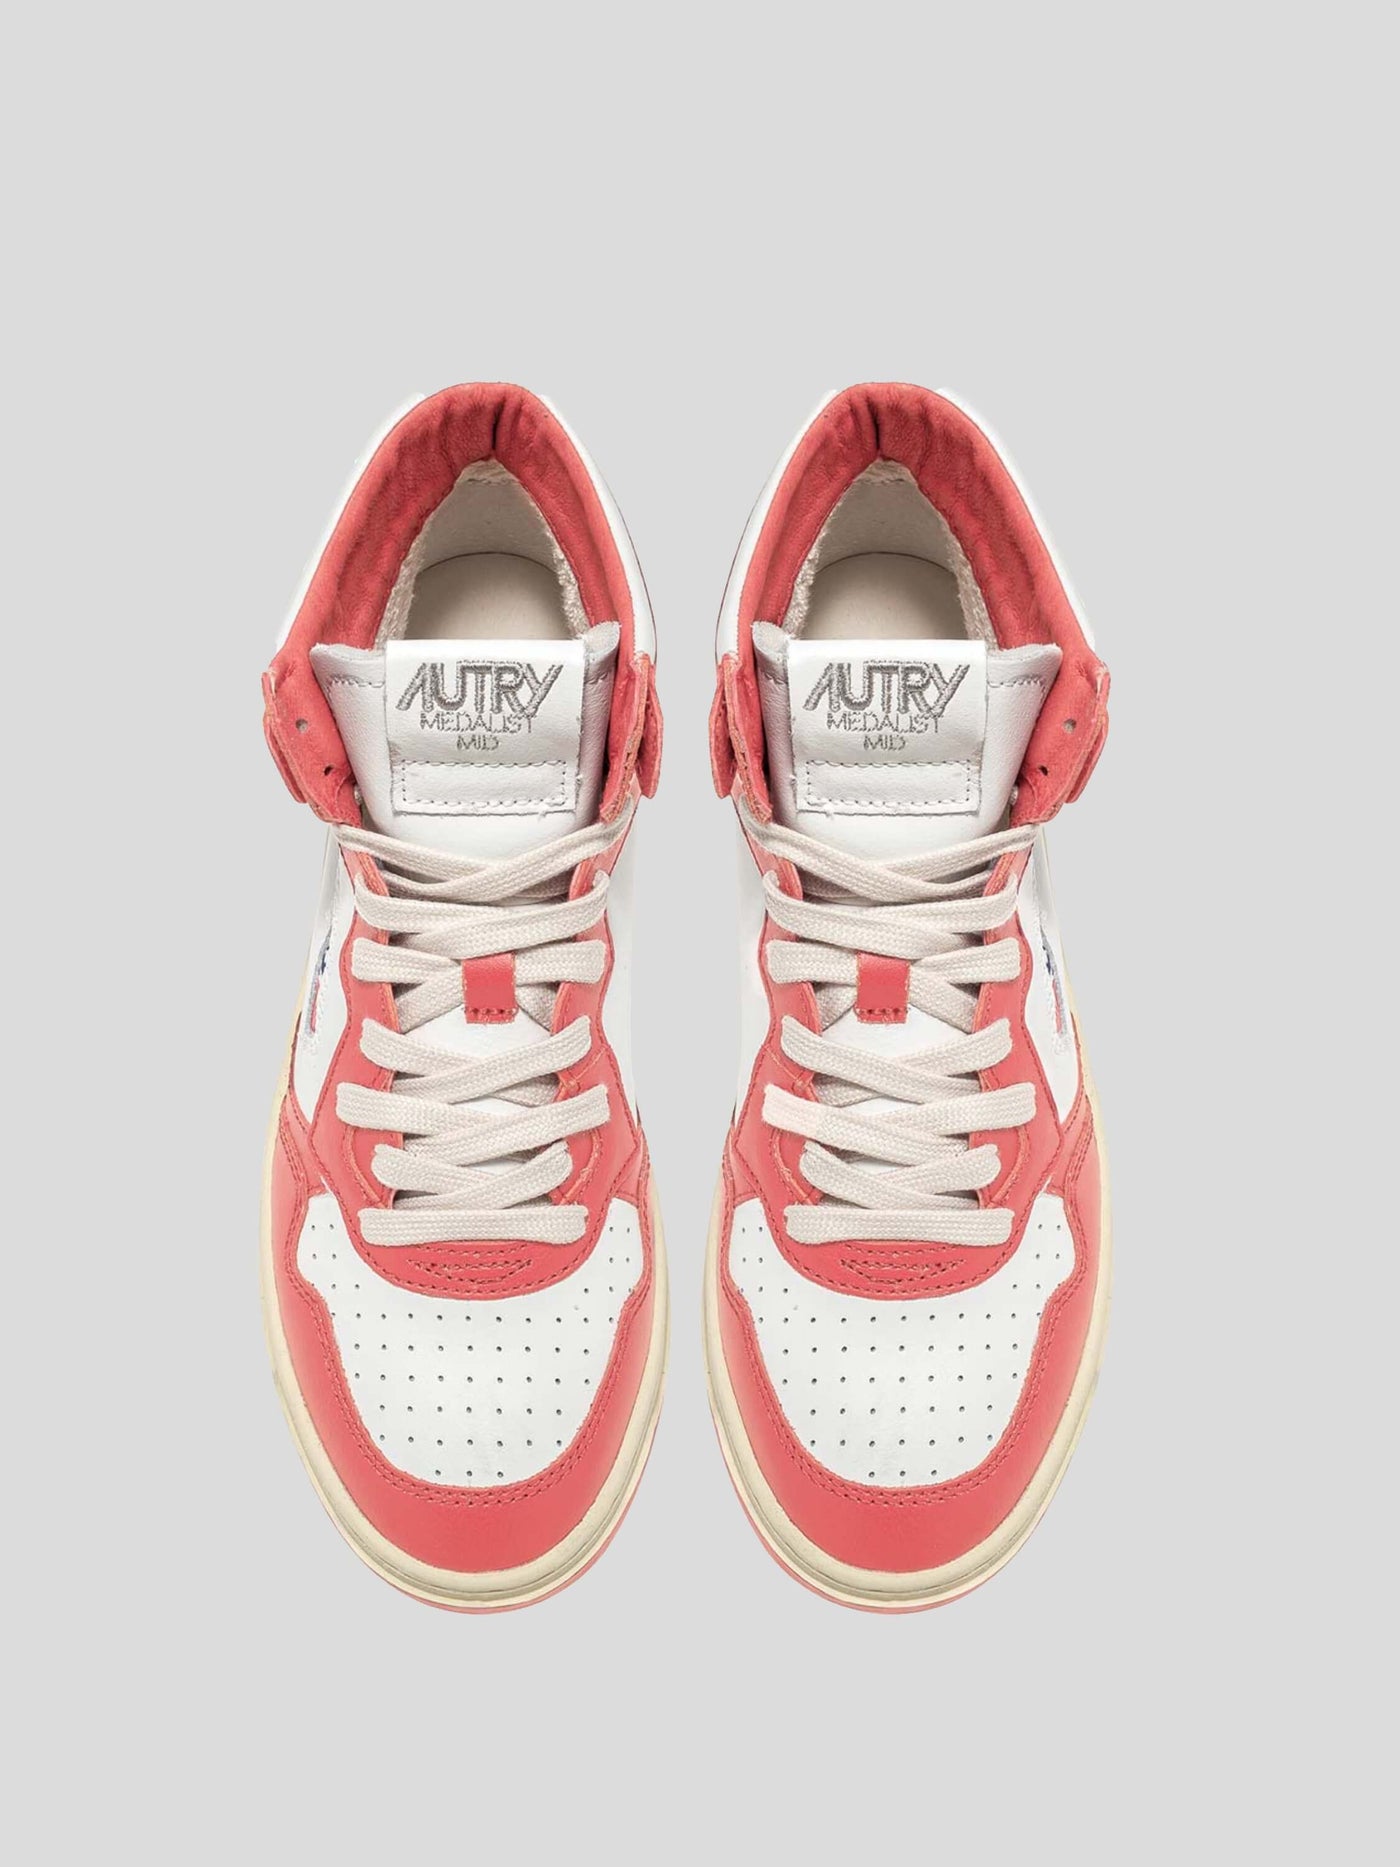 Autry Sneaker | Mid Top Sneaker Medalist lobster-pink AUMW WB22 | AUMW WB22 lobster / ADAM/EVE